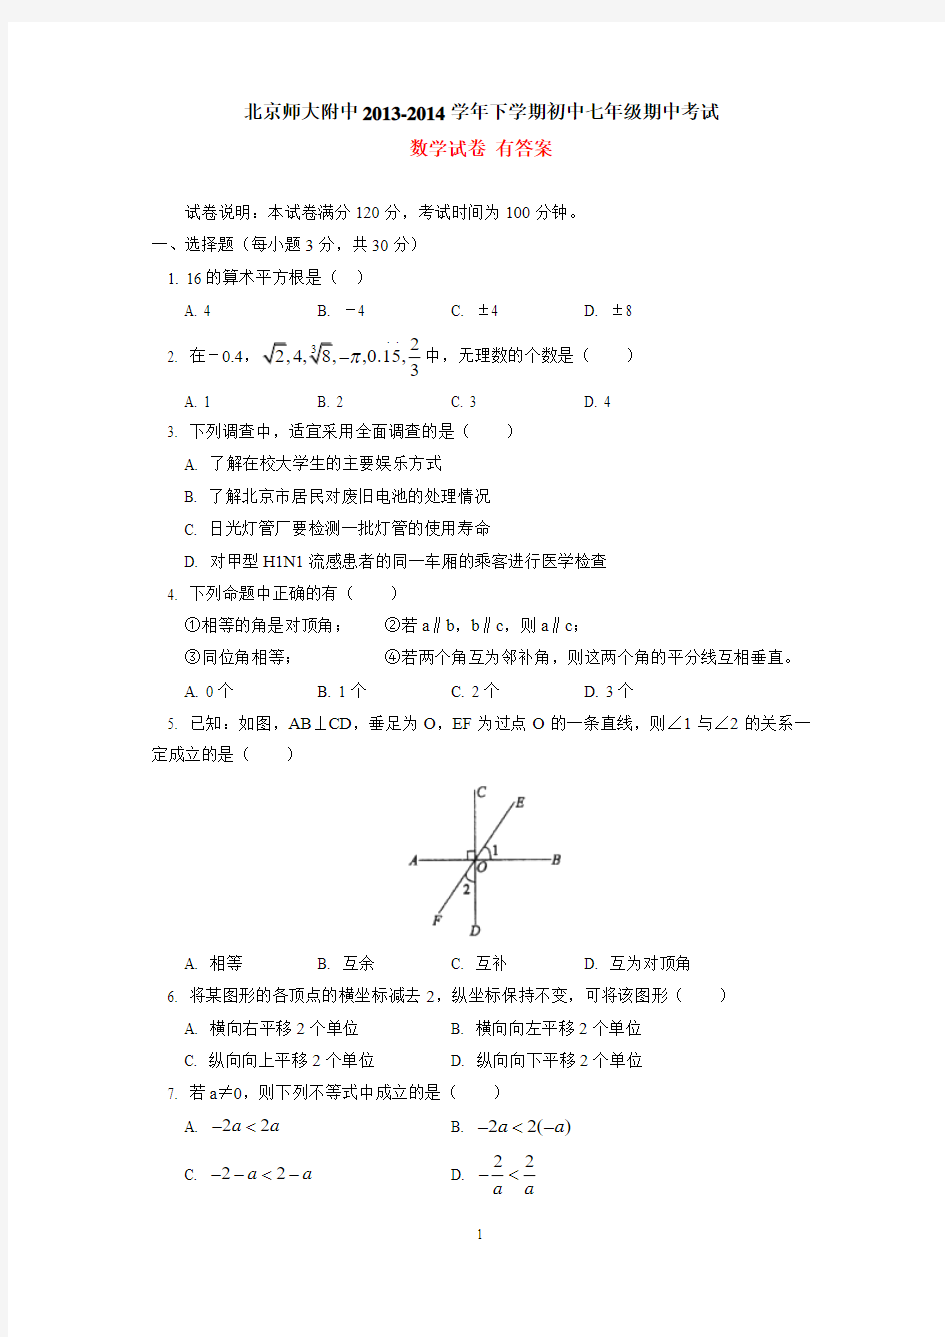 北京师大附中2014年初中七年级下学期期中考试数学试卷 有答案